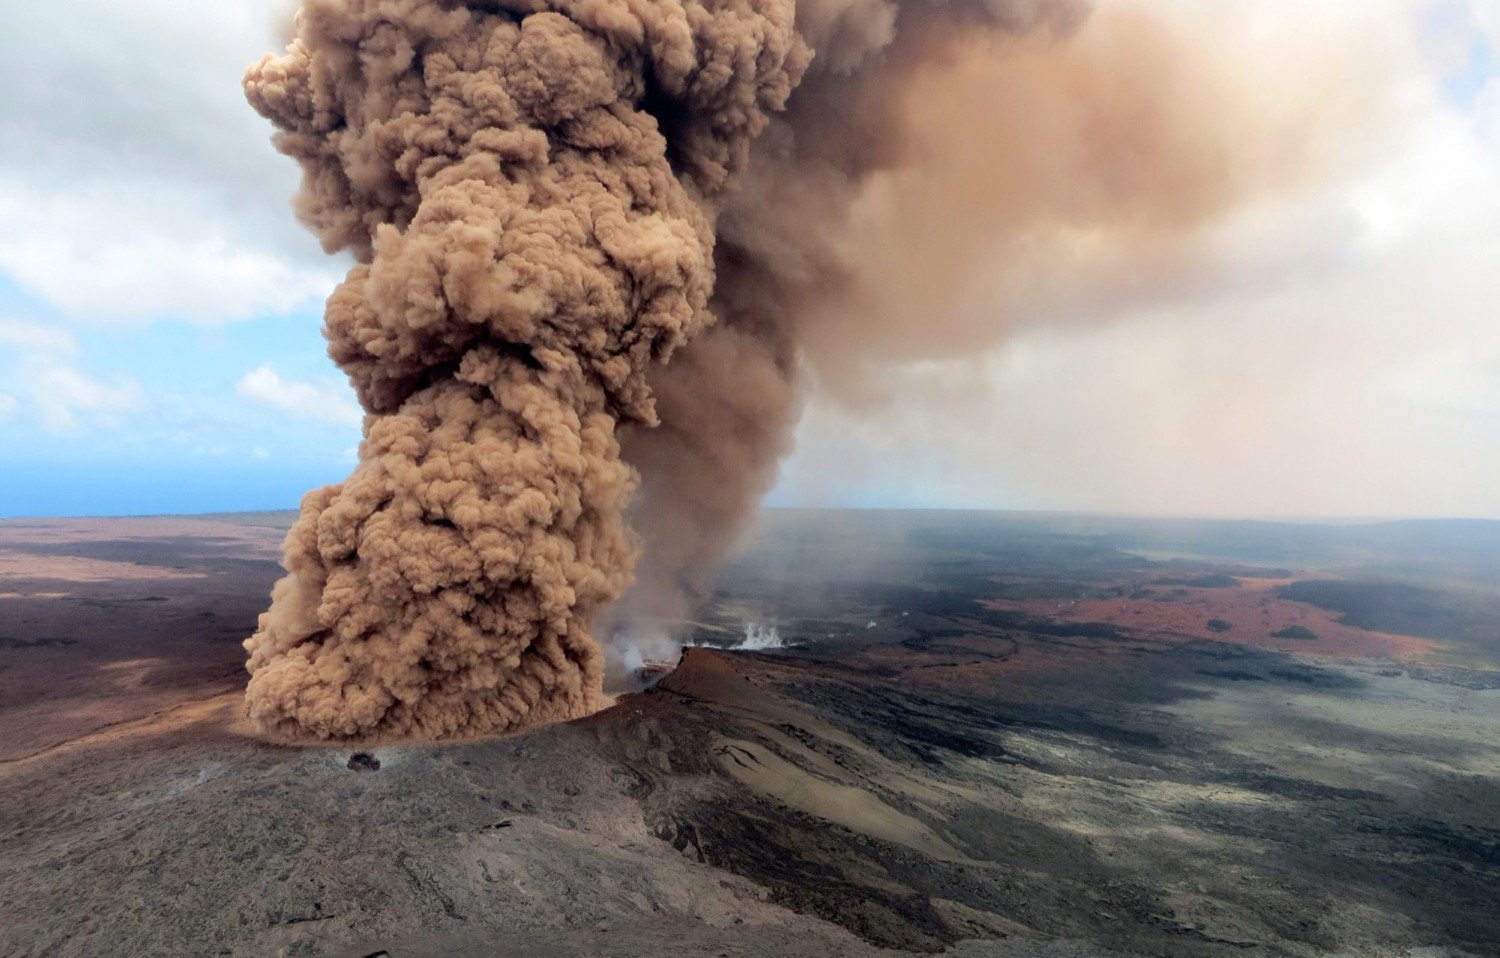 A situação no Havaí piora, o Kilauea pode começar a explodir